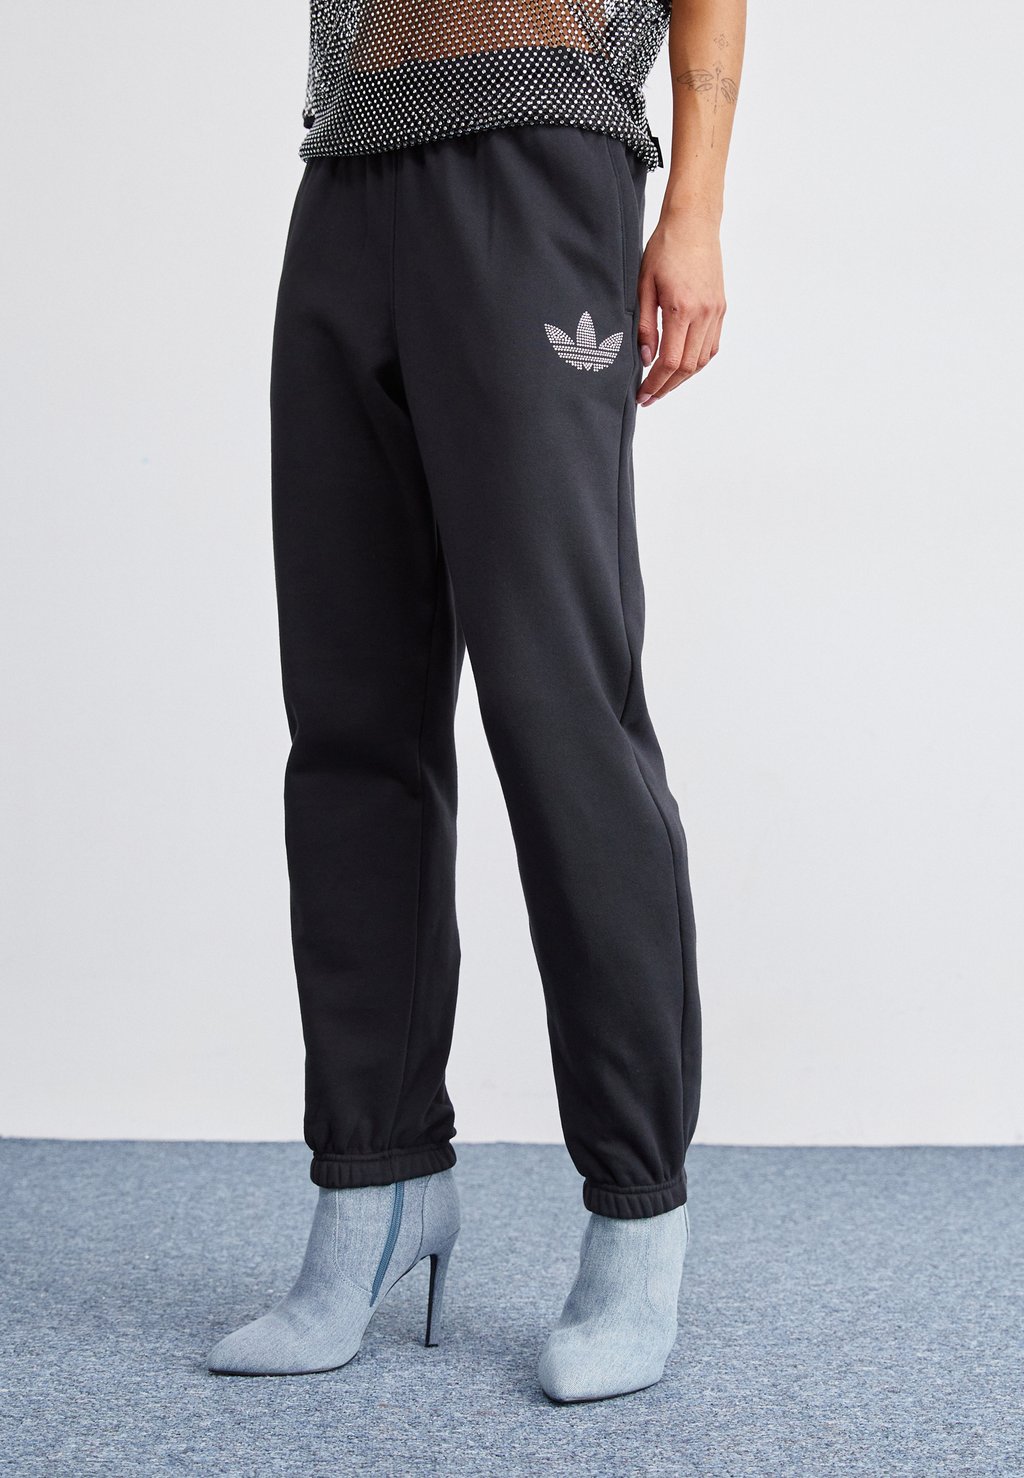 Спортивные брюки Fashion Embellished Joggers adidas Originals, черный спортивные брюки adidas casual joggers black hg2069 черный